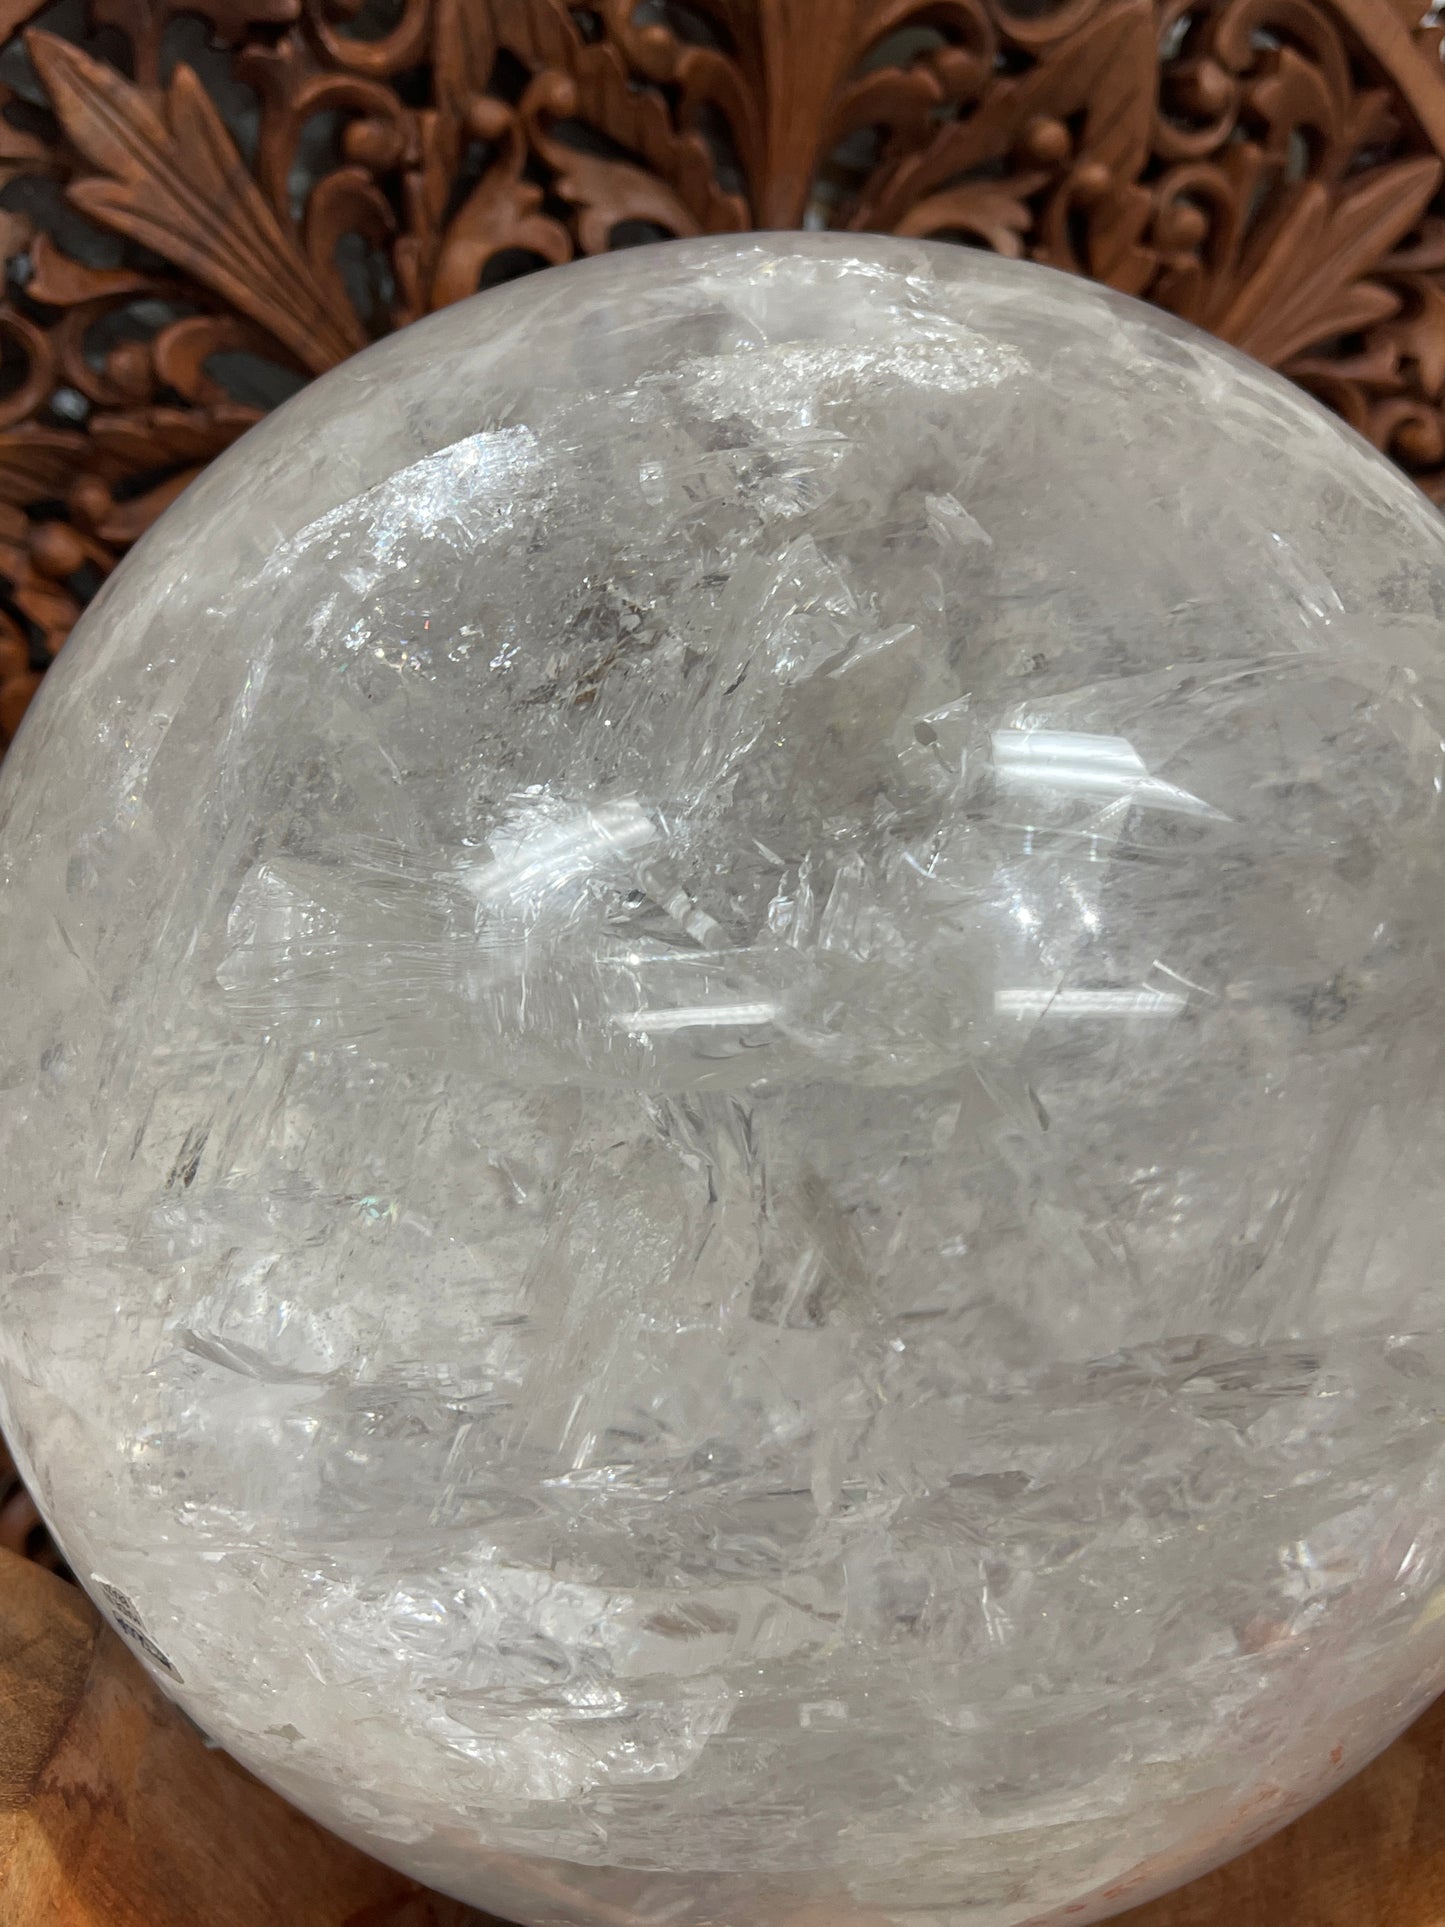 XXXXL 21cm Clear Quartz Crystal Balls Spheres from Brazil